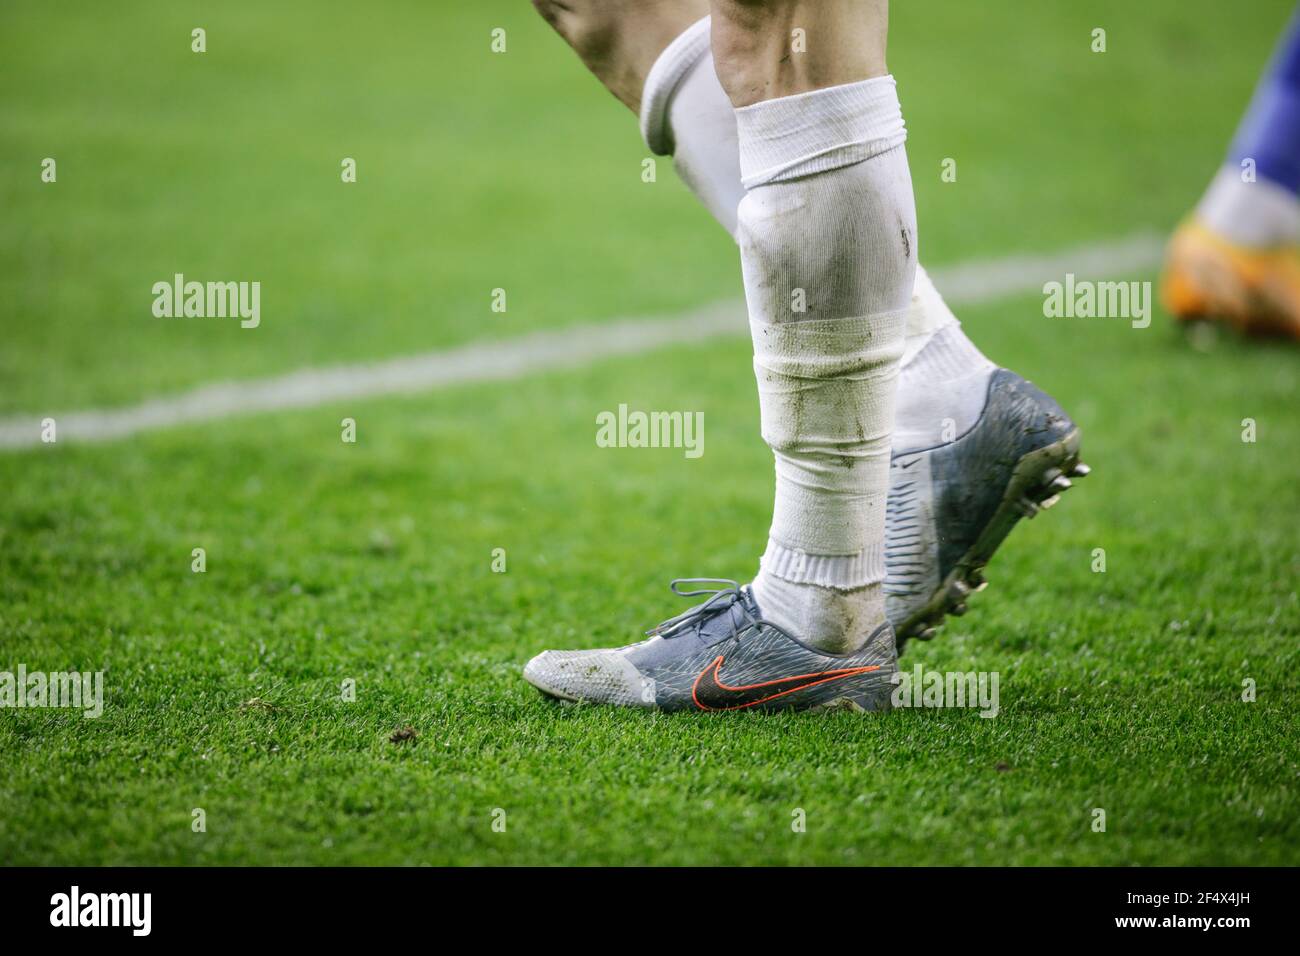 Scarpe da calcio nike immagini e fotografie stock ad alta risoluzione -  Alamy